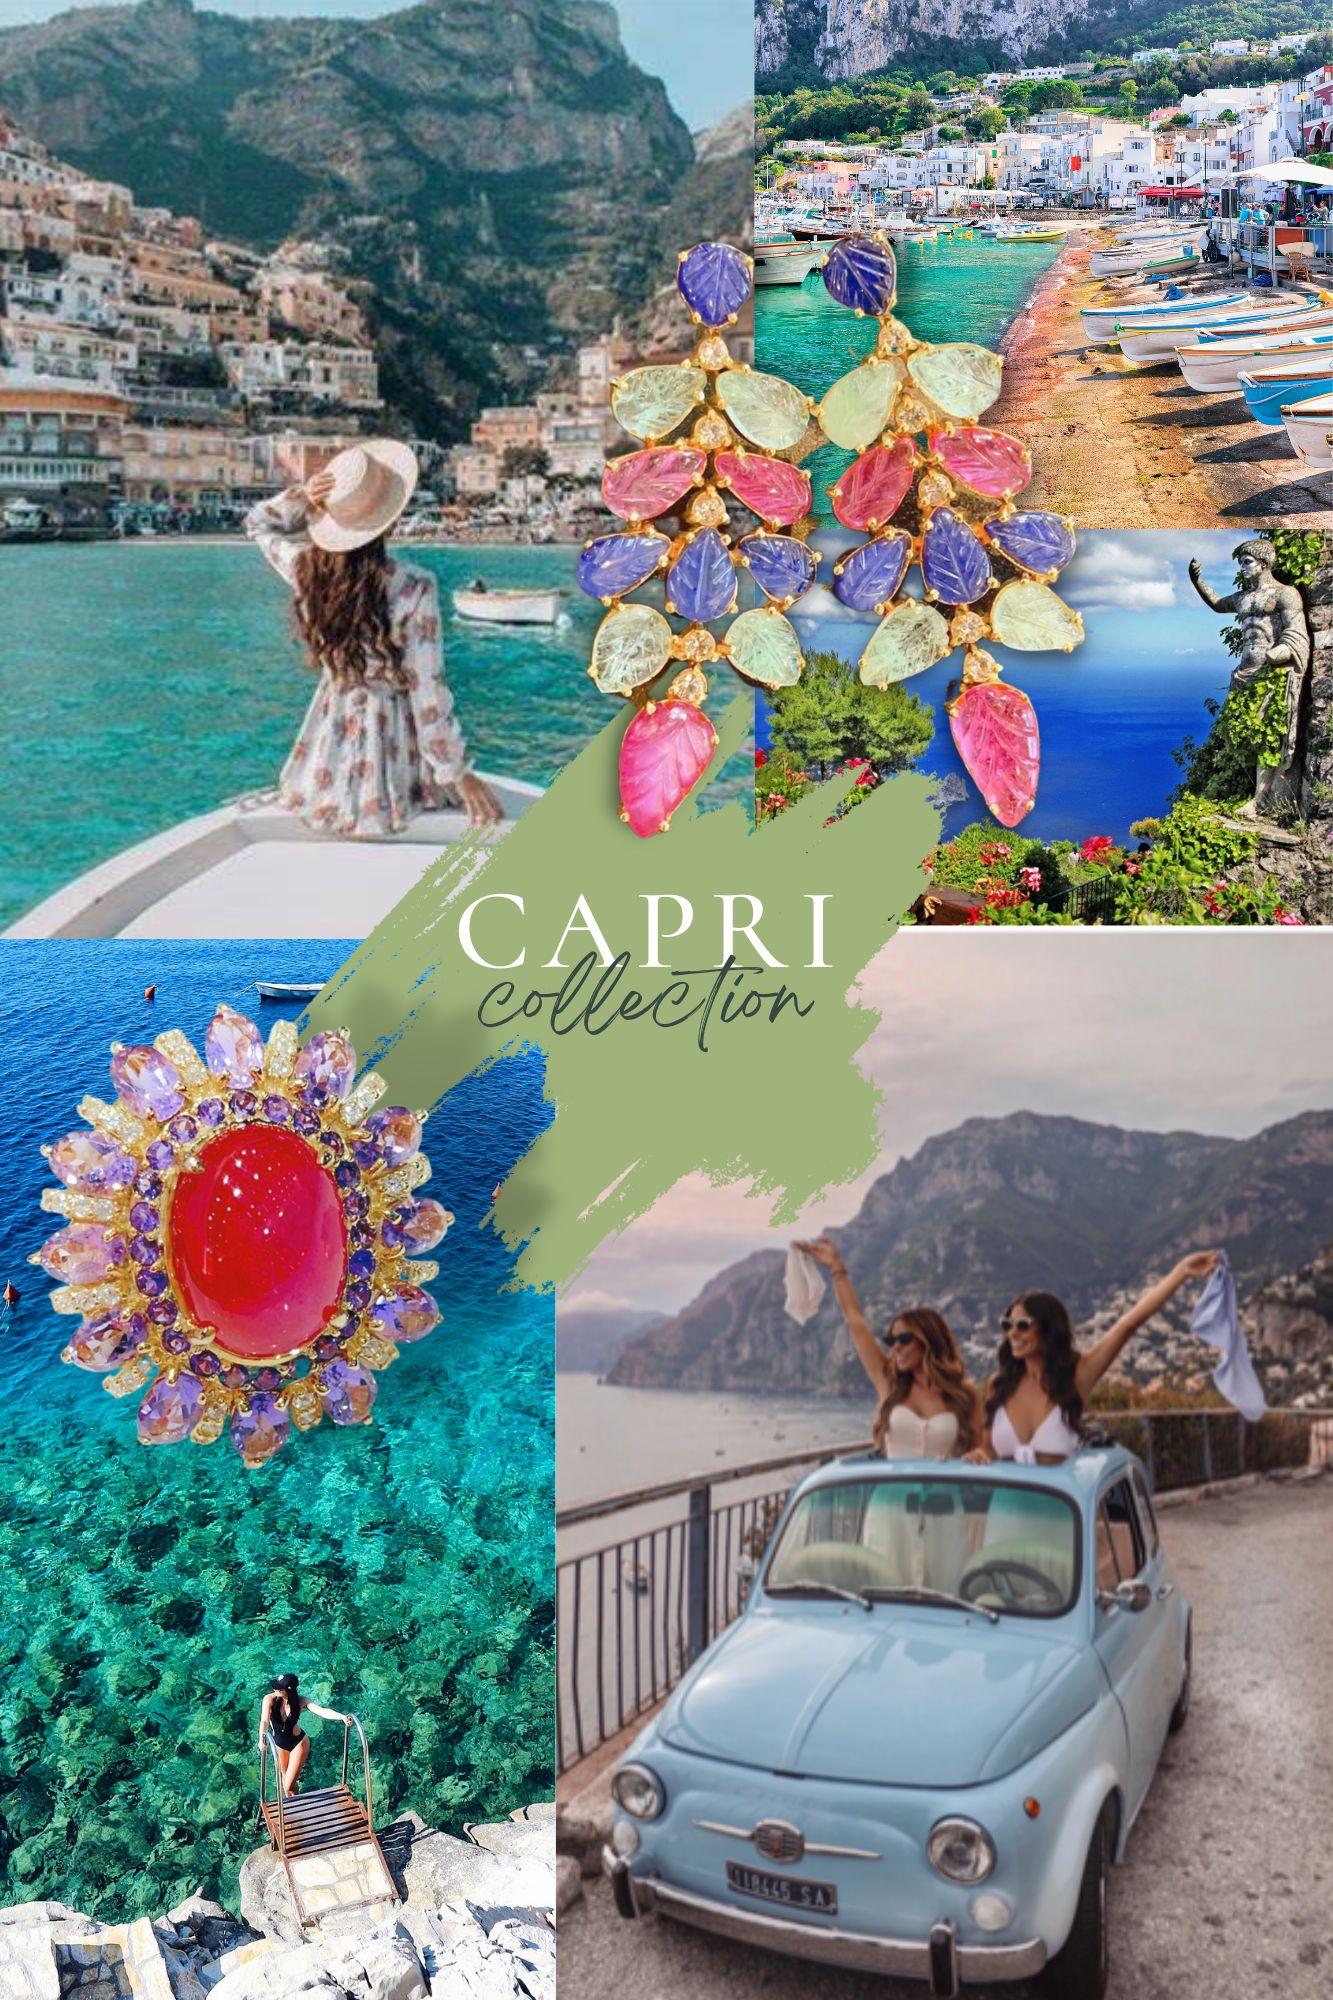 Belle Époque Bochic “Capri” Red Ruby & Blue Sapphire Earrings Set in 22k Gold & Silver For Sale